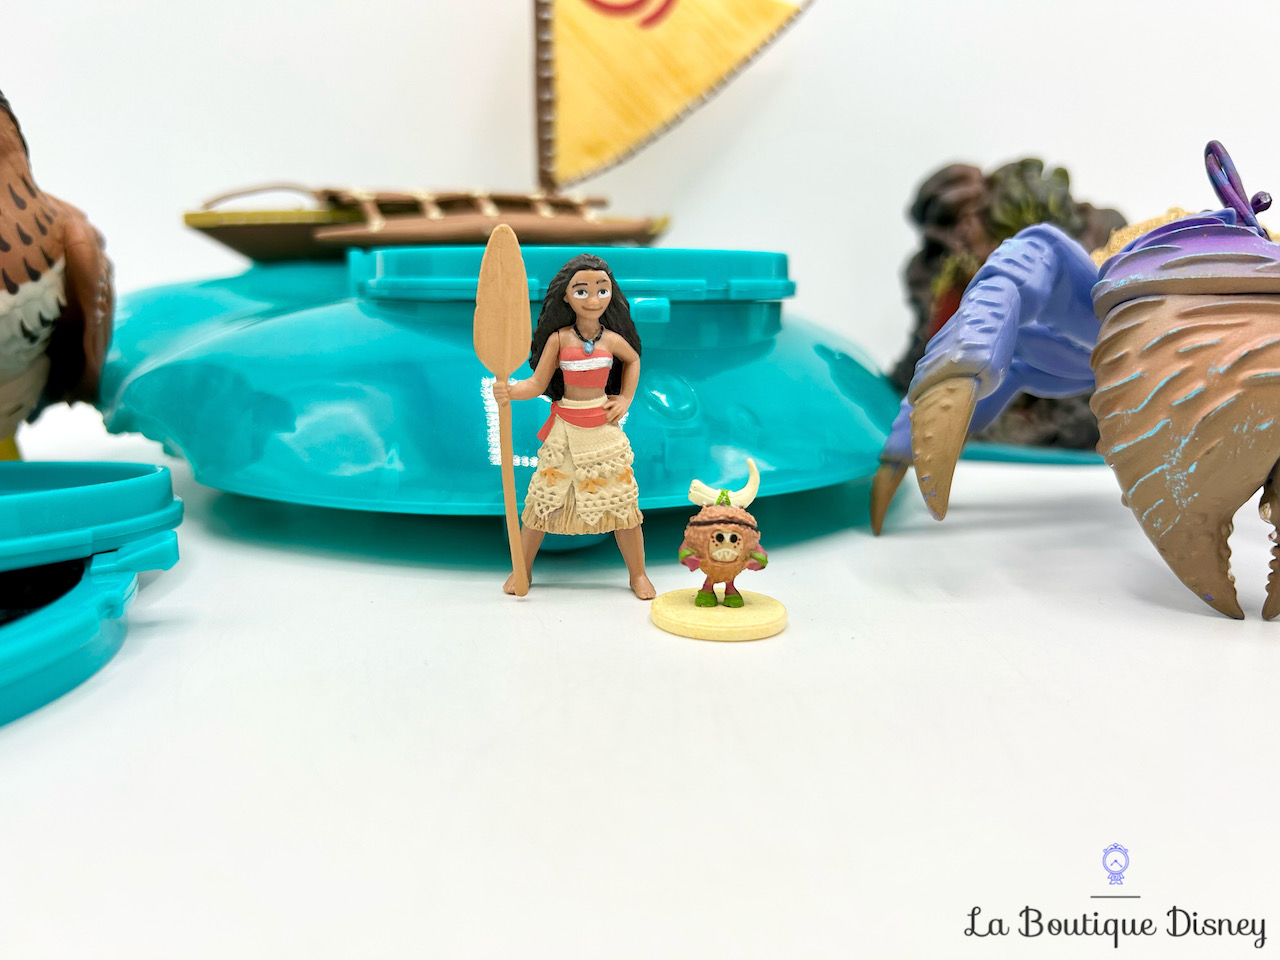 Ensemble de jeu Bateau à Projections dimages Vaiana Disney Store 2016 projecteur figurines